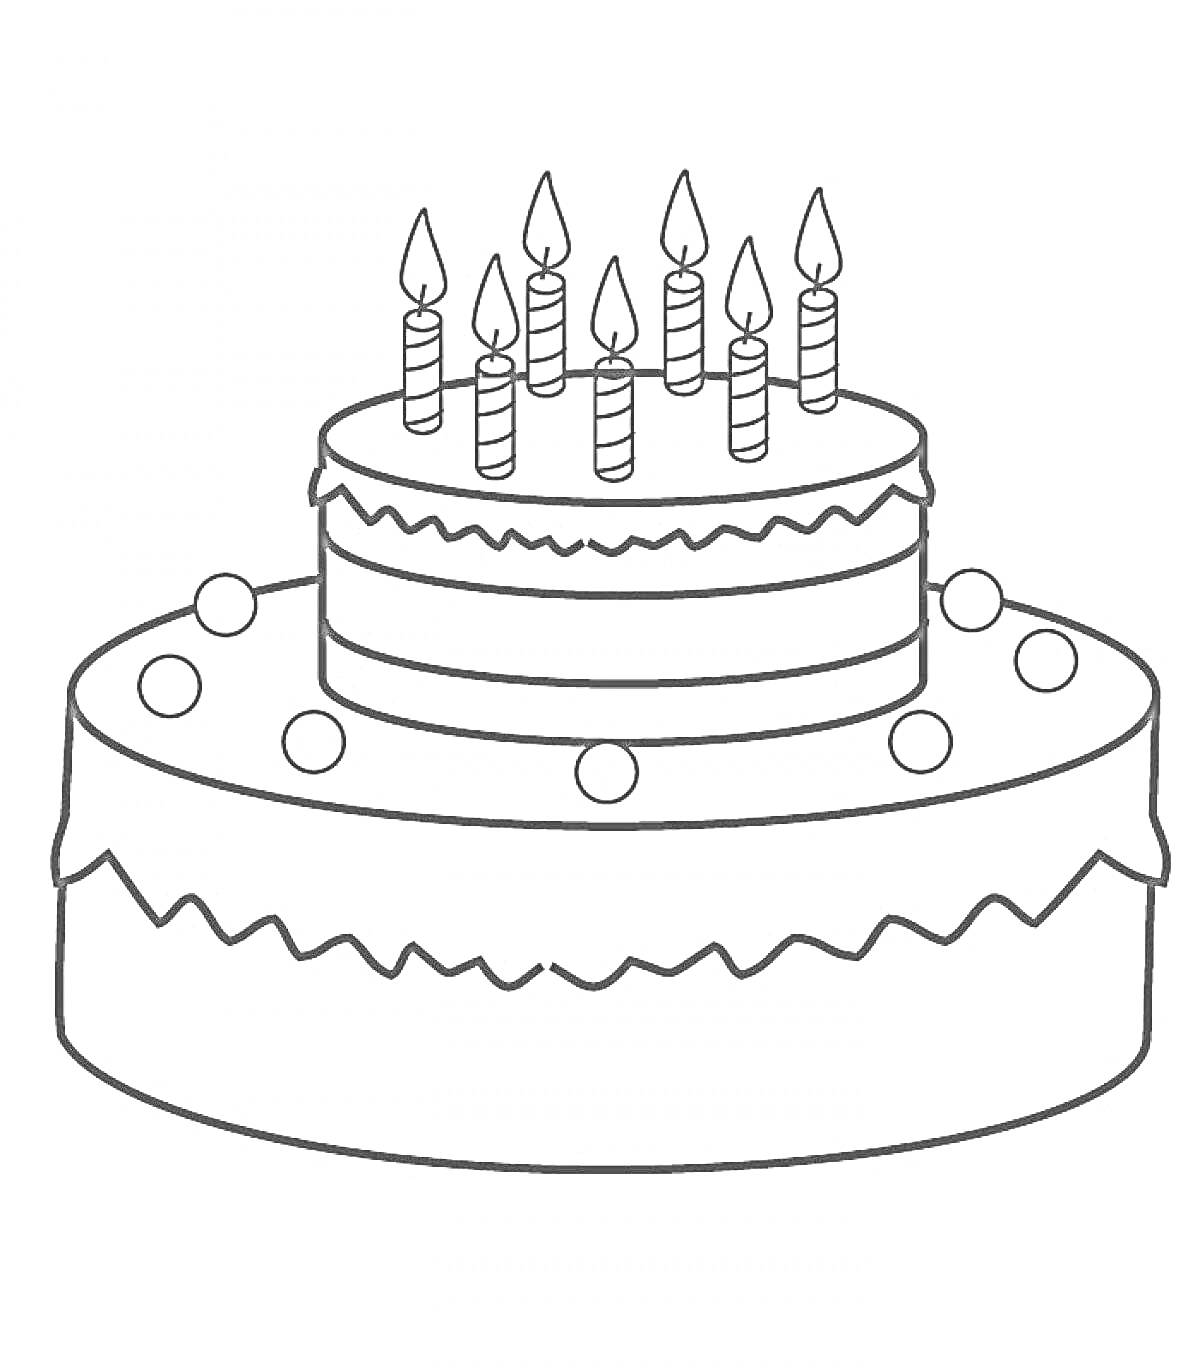 Двухъярусный торт с семью свечами и шариками украшения